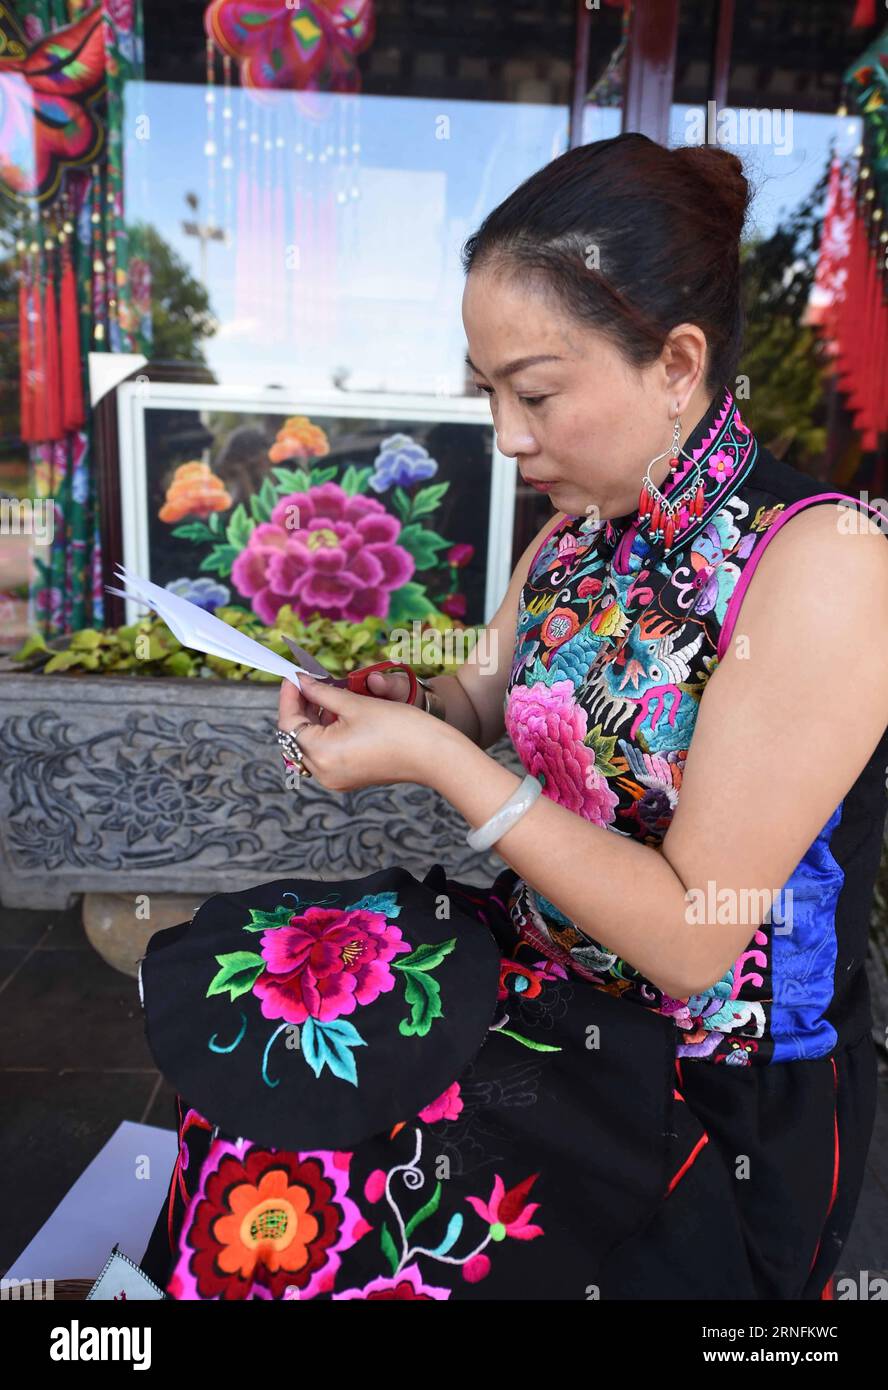 DAYAO, 14 de agosto de 2016 -- Luo Jun hace una muestra de producto de bordado en el taller en la Prefectura Autónoma de Chuxiong Yi, provincia de Yunnan, suroeste de China, 14 de agosto de 2016. Luo Jun, empresaria del grupo étnico Yi, estableció una cooperativa en 2011 para producir bordados con estilo étnico Yi único, como vestidos, bolsos, anillos de oreja y etc. En los primeros ocho meses de este año, las ventas de su cooperativa alcanzaron 17 millones de yuanes (alrededor de 2,56 millones de dólares). (wsw) CHINA-YUNNAN-YI ETNICO-BORDADO (CN) YangxZongyou PUBLICATIONxNOTxINxCHN Dayao Aug 14 2016 Luo jun hace una muestra de E Foto de stock